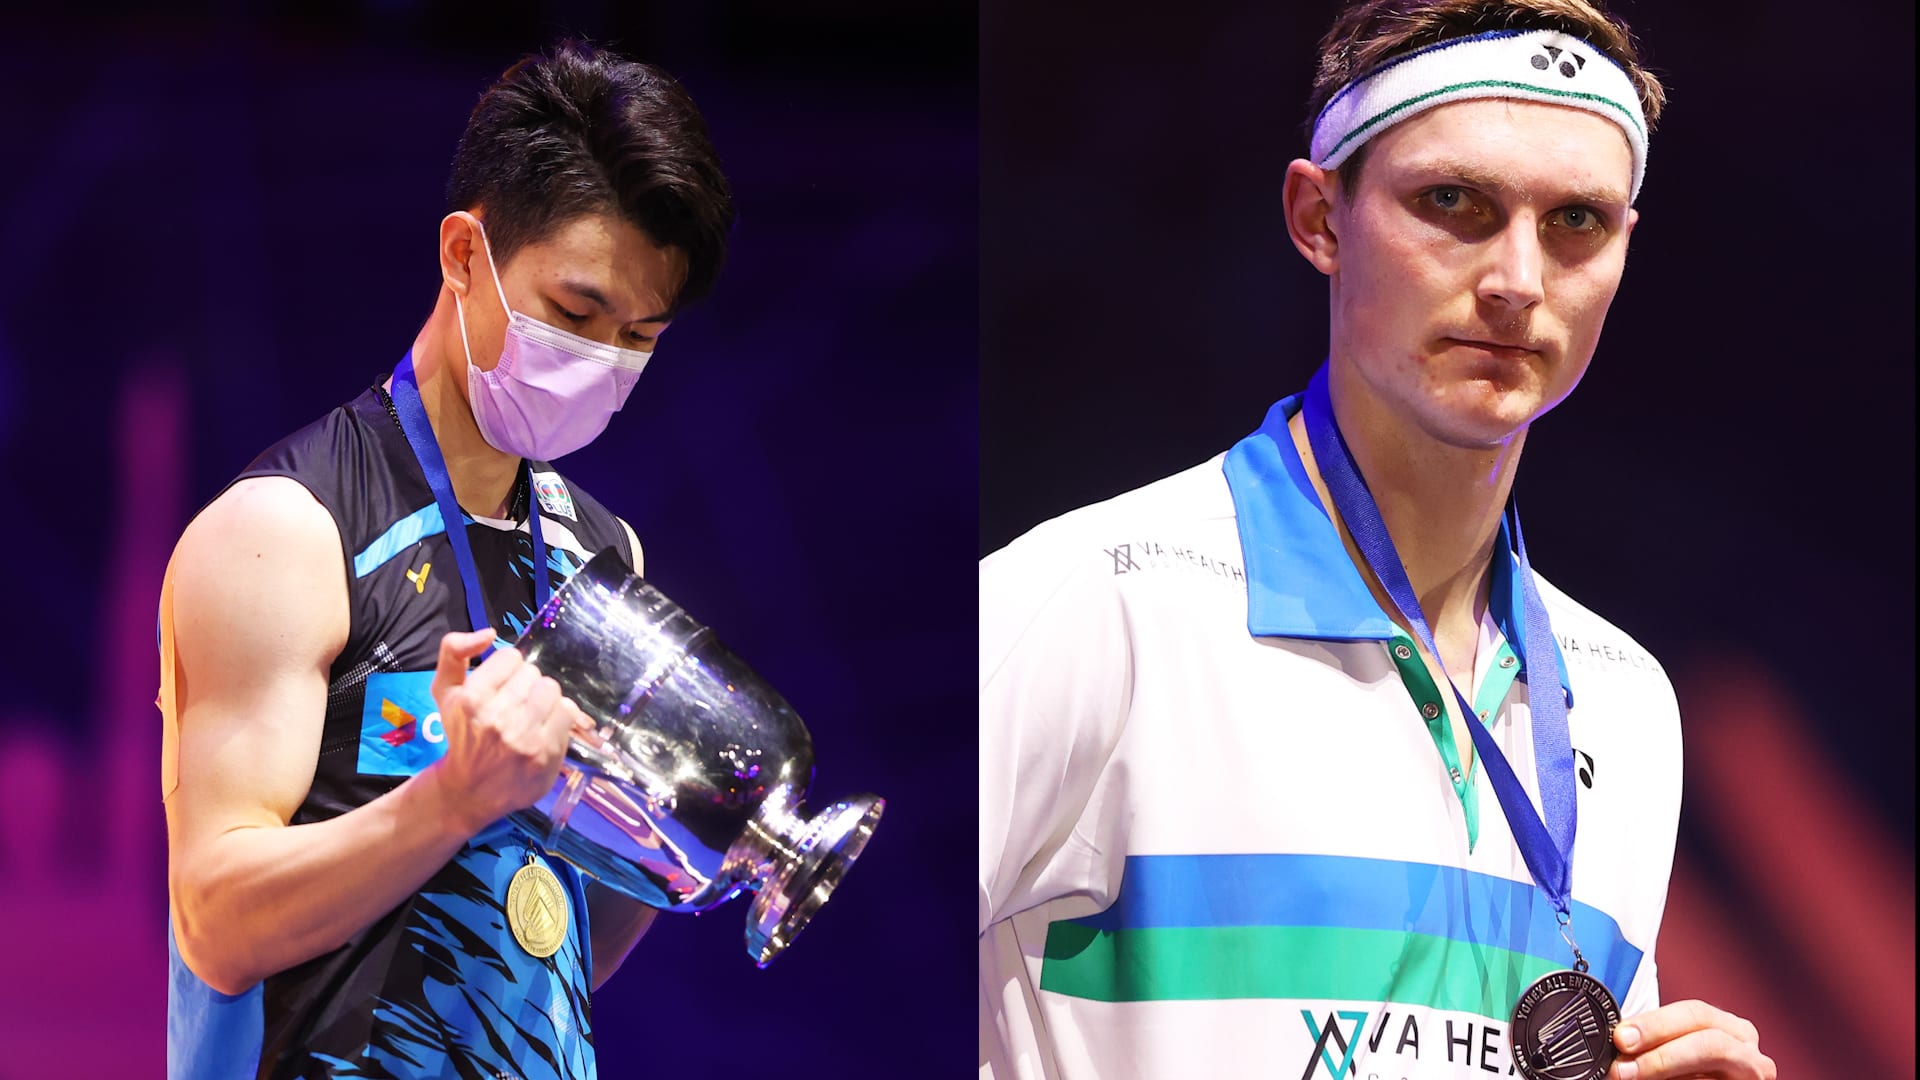 Badmintons Lee Zii Jia inspired by idol Viktor Axelsen